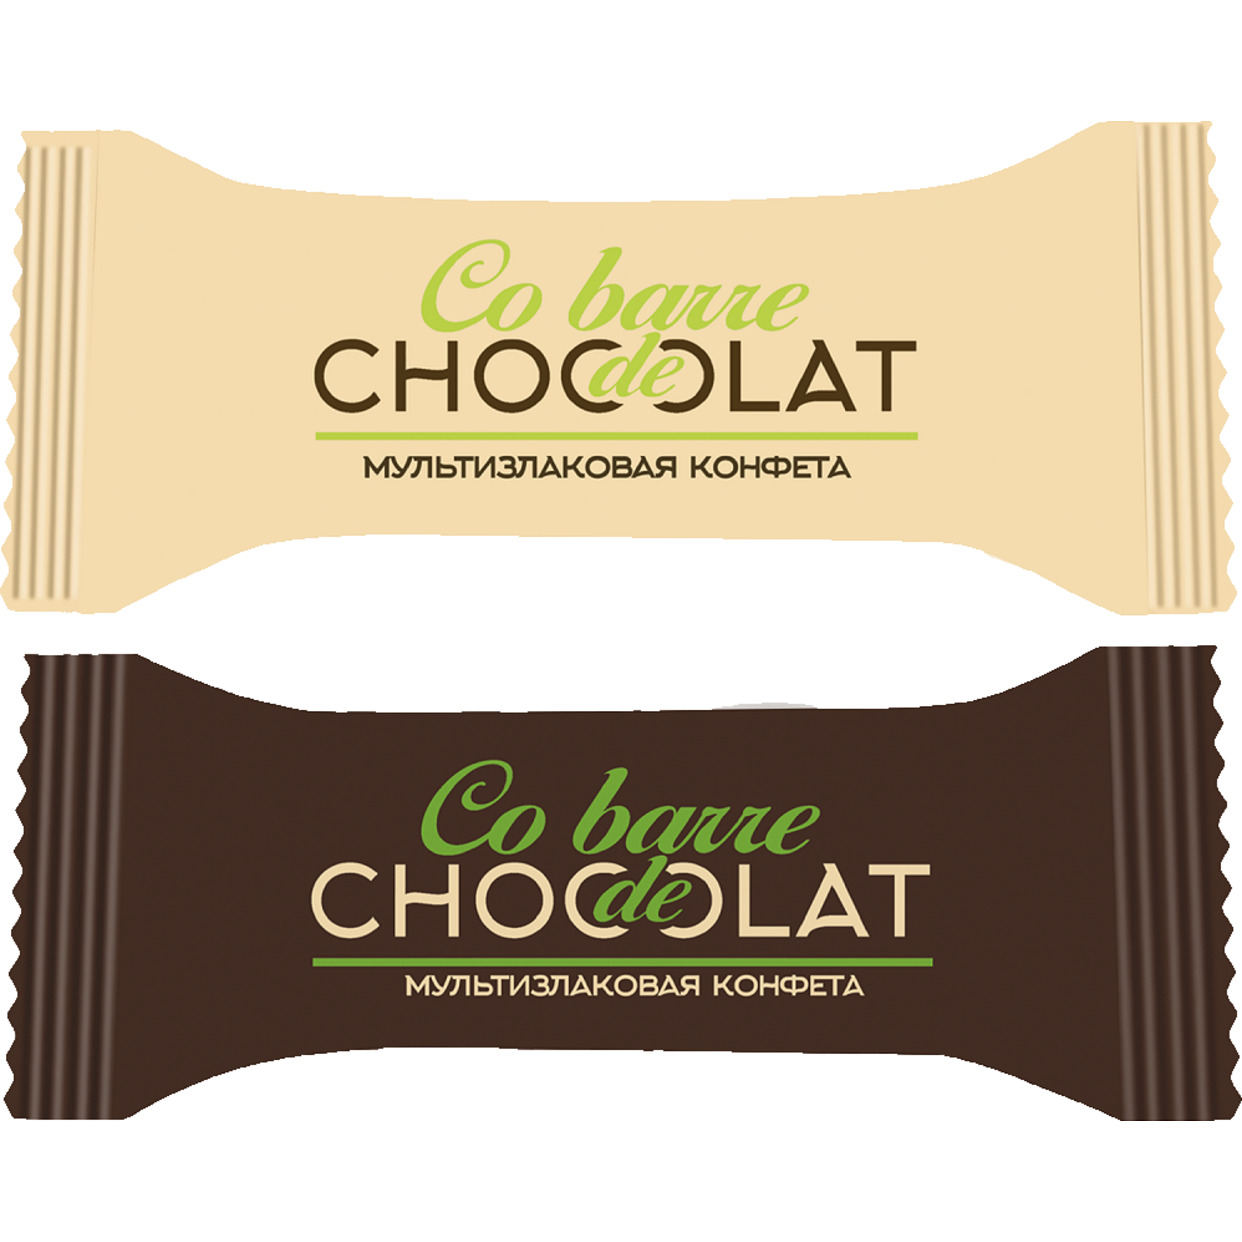 Мультизлаковые конфеты CO BARRE DE CHOCOLAT с белой и темной кондитерской глазурью 1кг